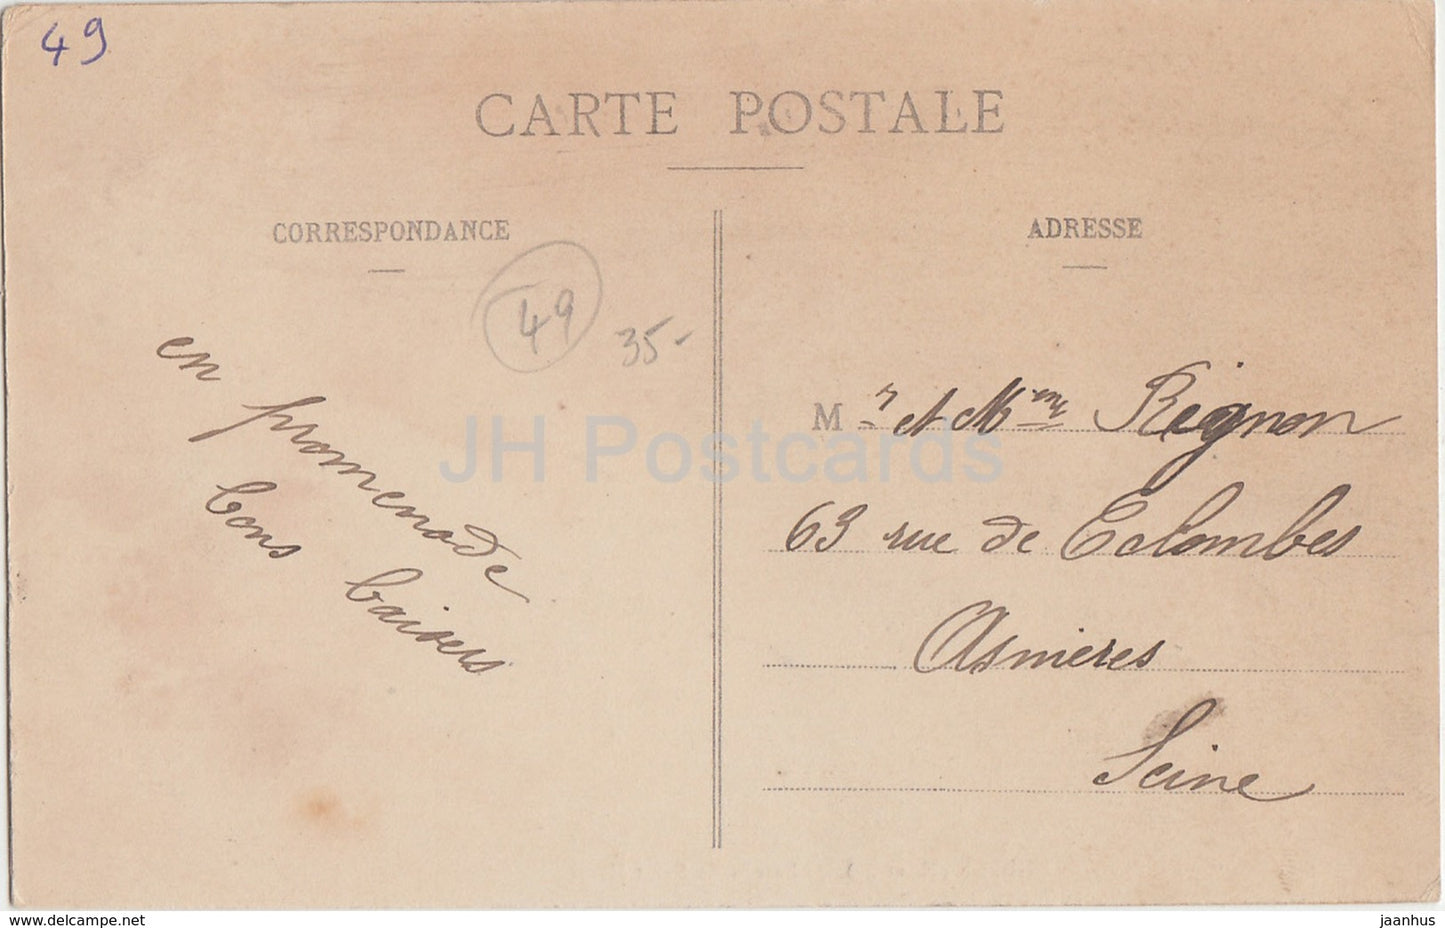 Andigne - Château de Saint Henis - château - carte postale ancienne - France - occasion